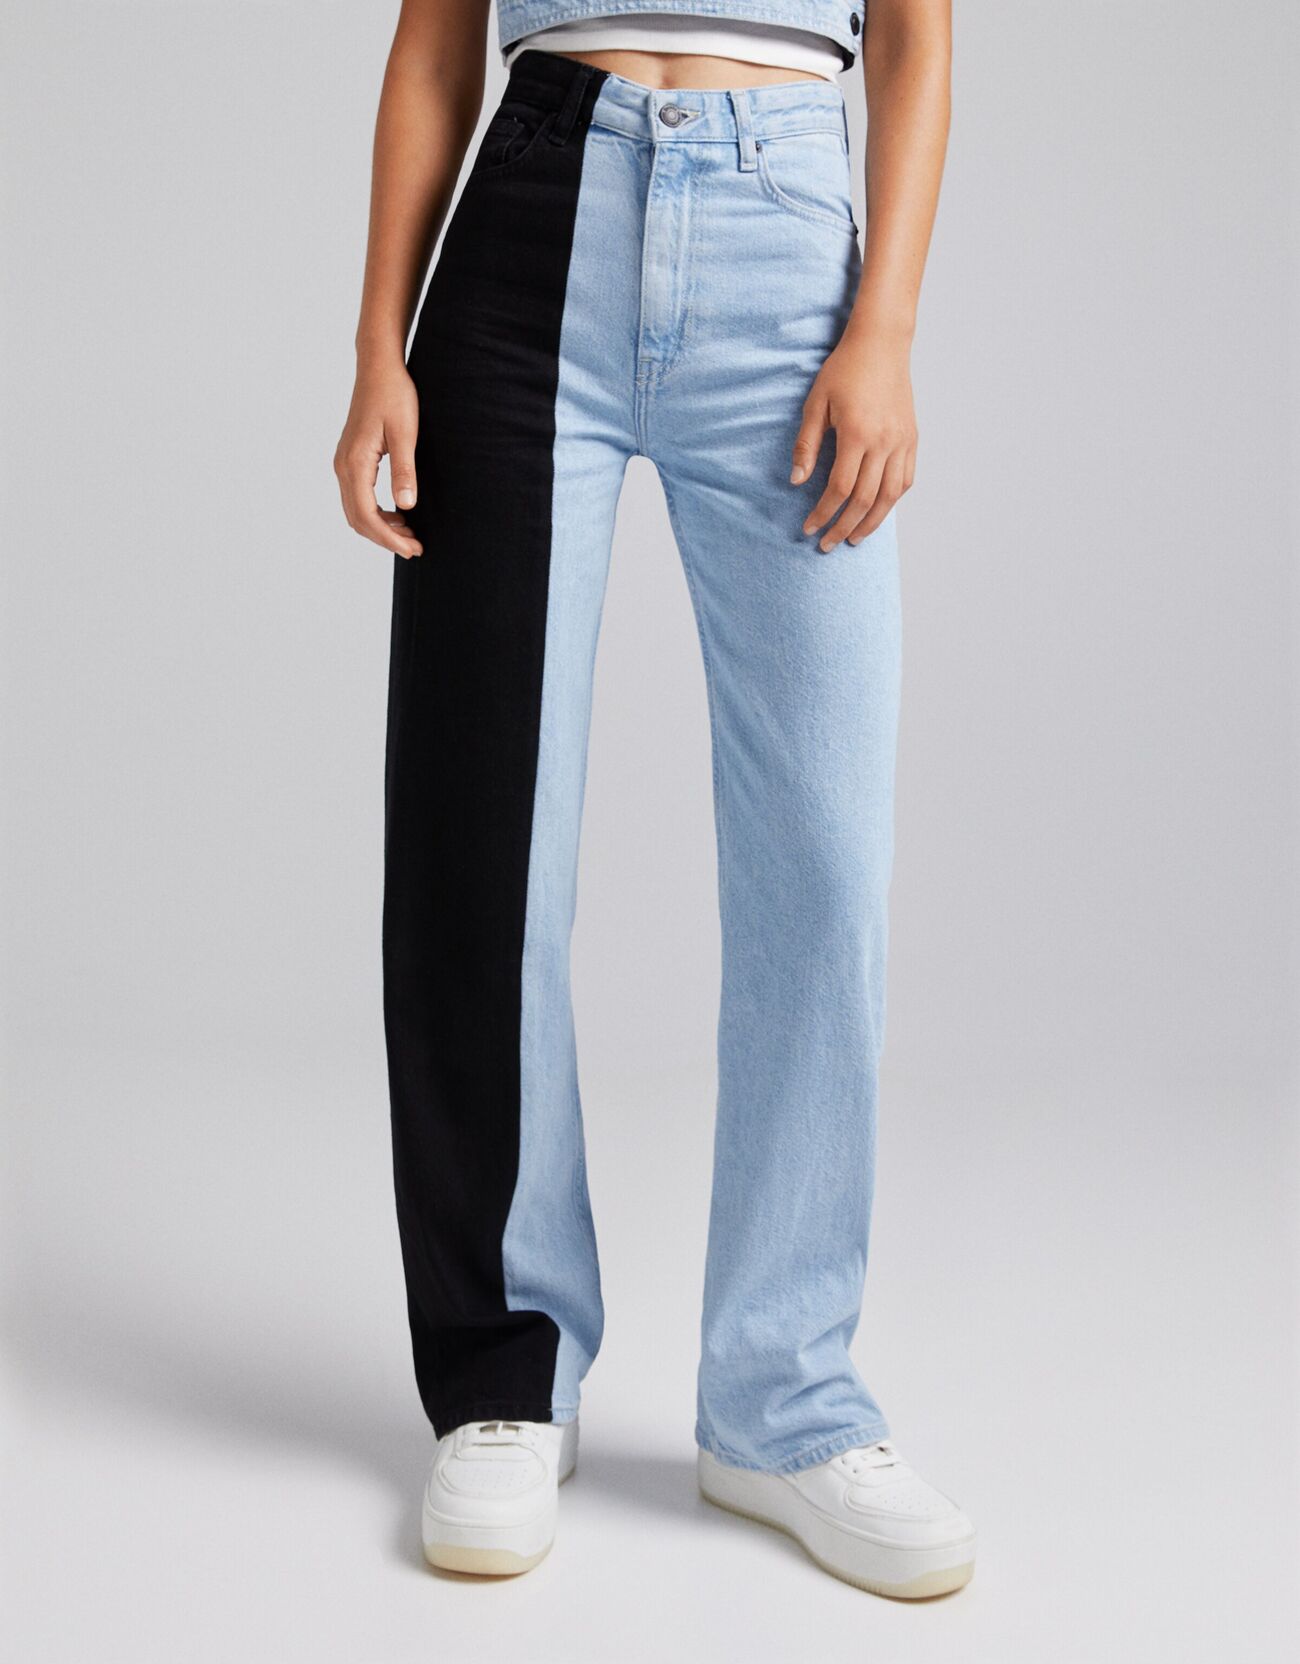 Двухцветные джинсы в стиле 90-х Синий застиранный Bershka